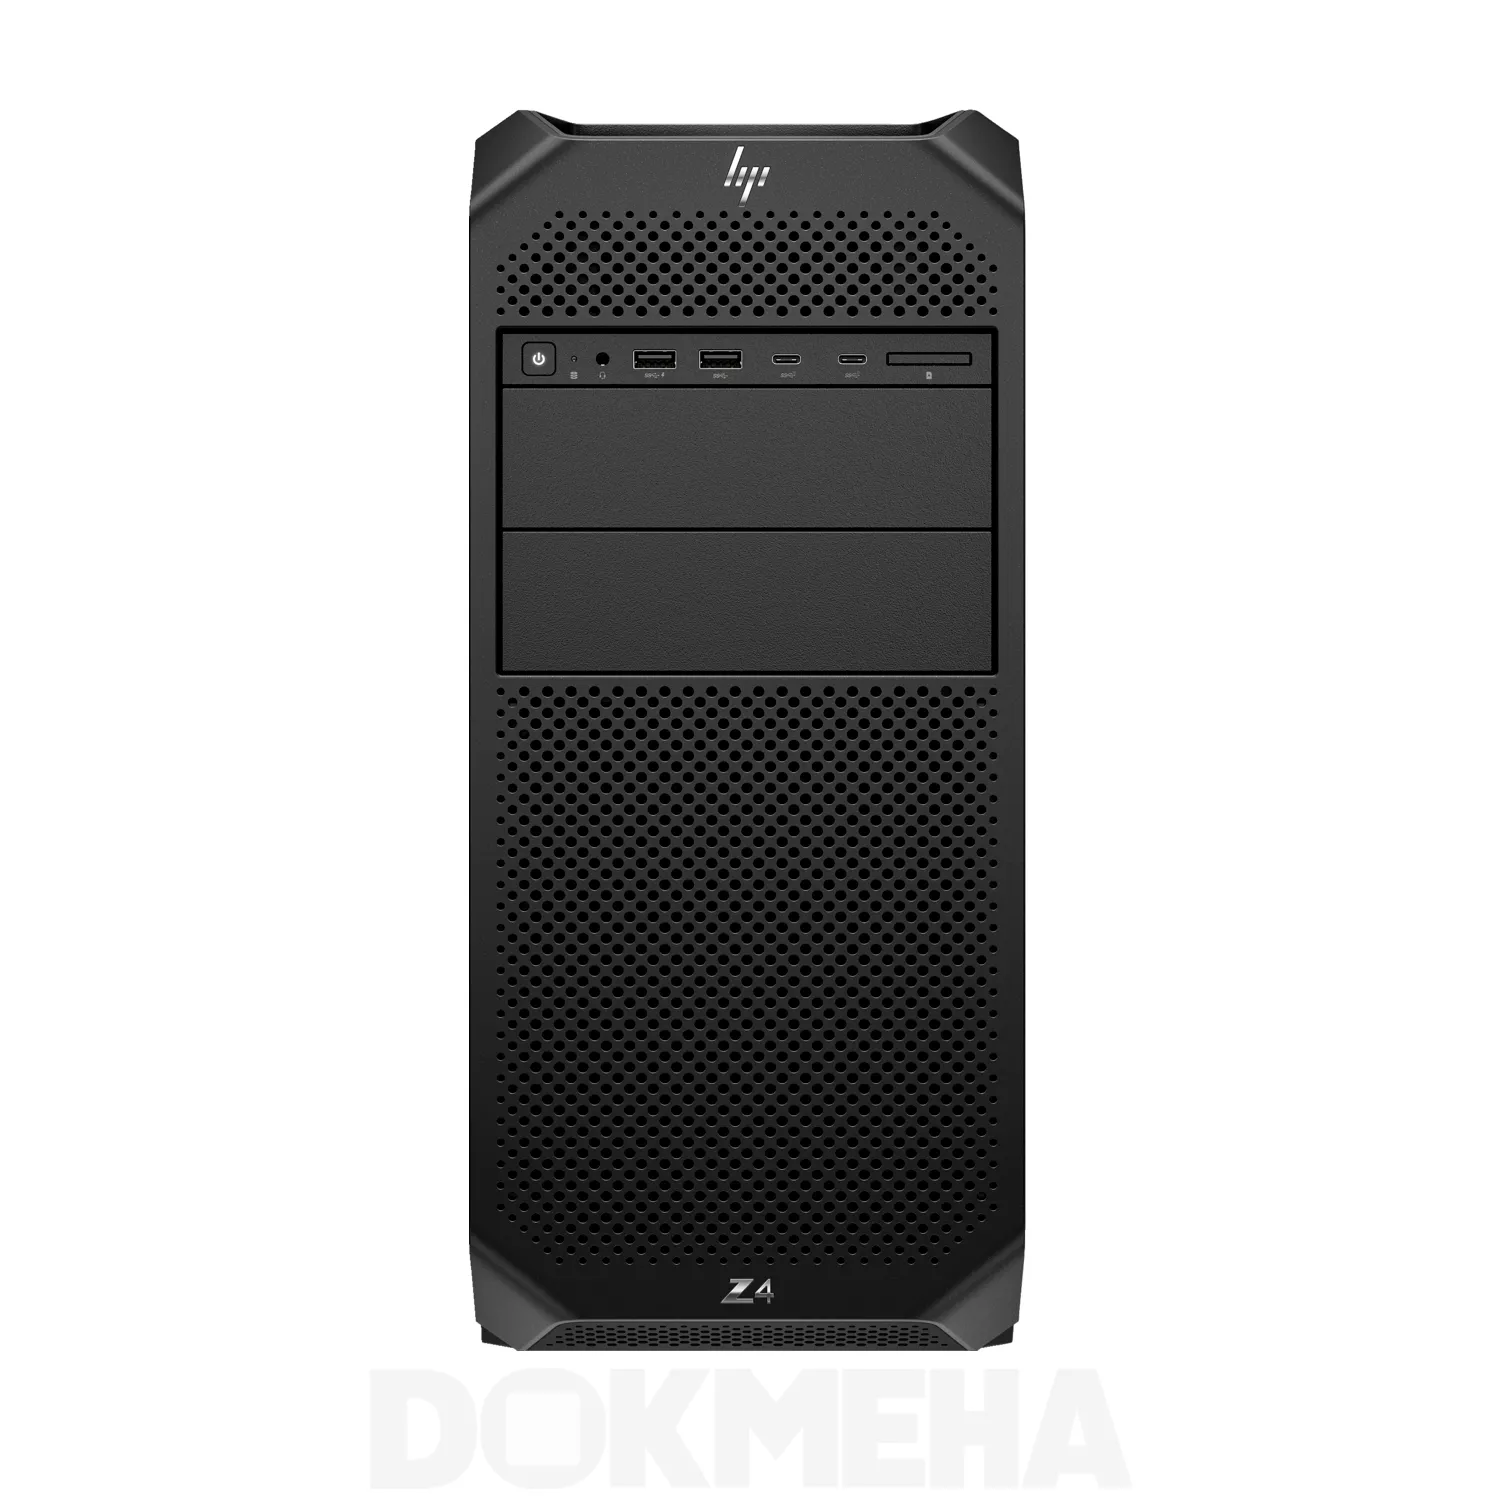 کیس ورک استیشن HP Z4 G5 Workstation PC